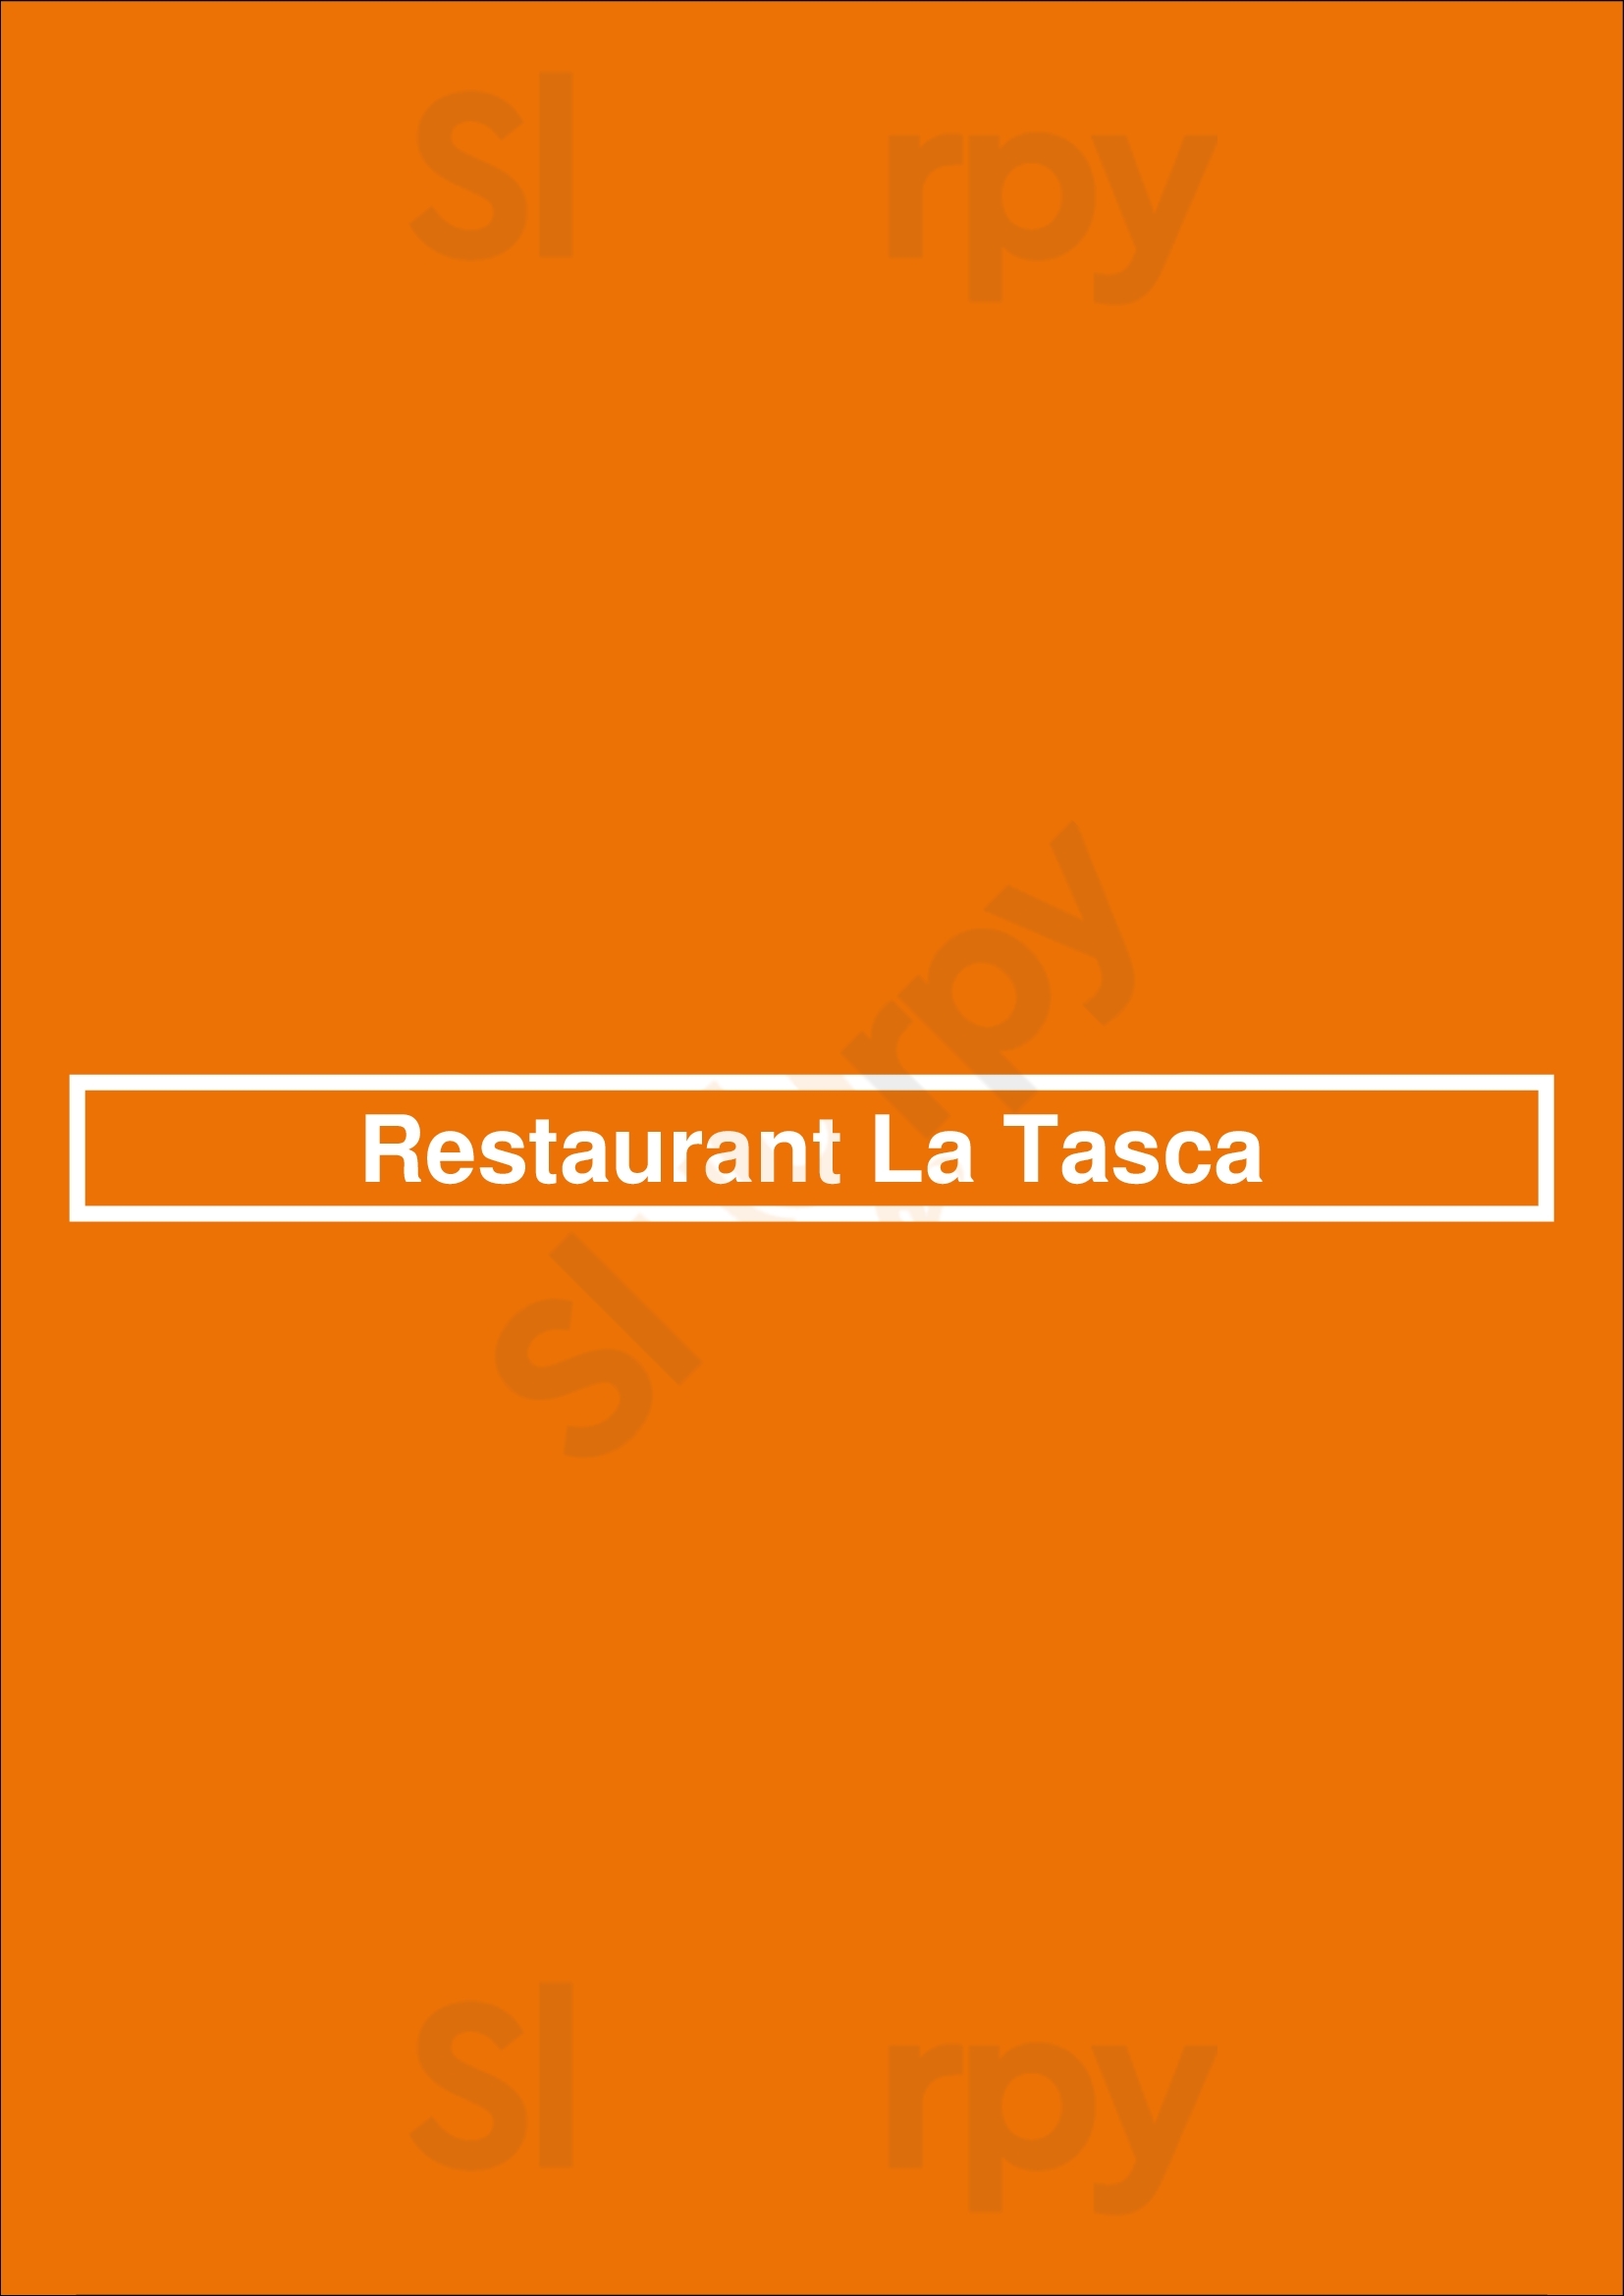 Restaurant La Tasca Delft Menu - 1